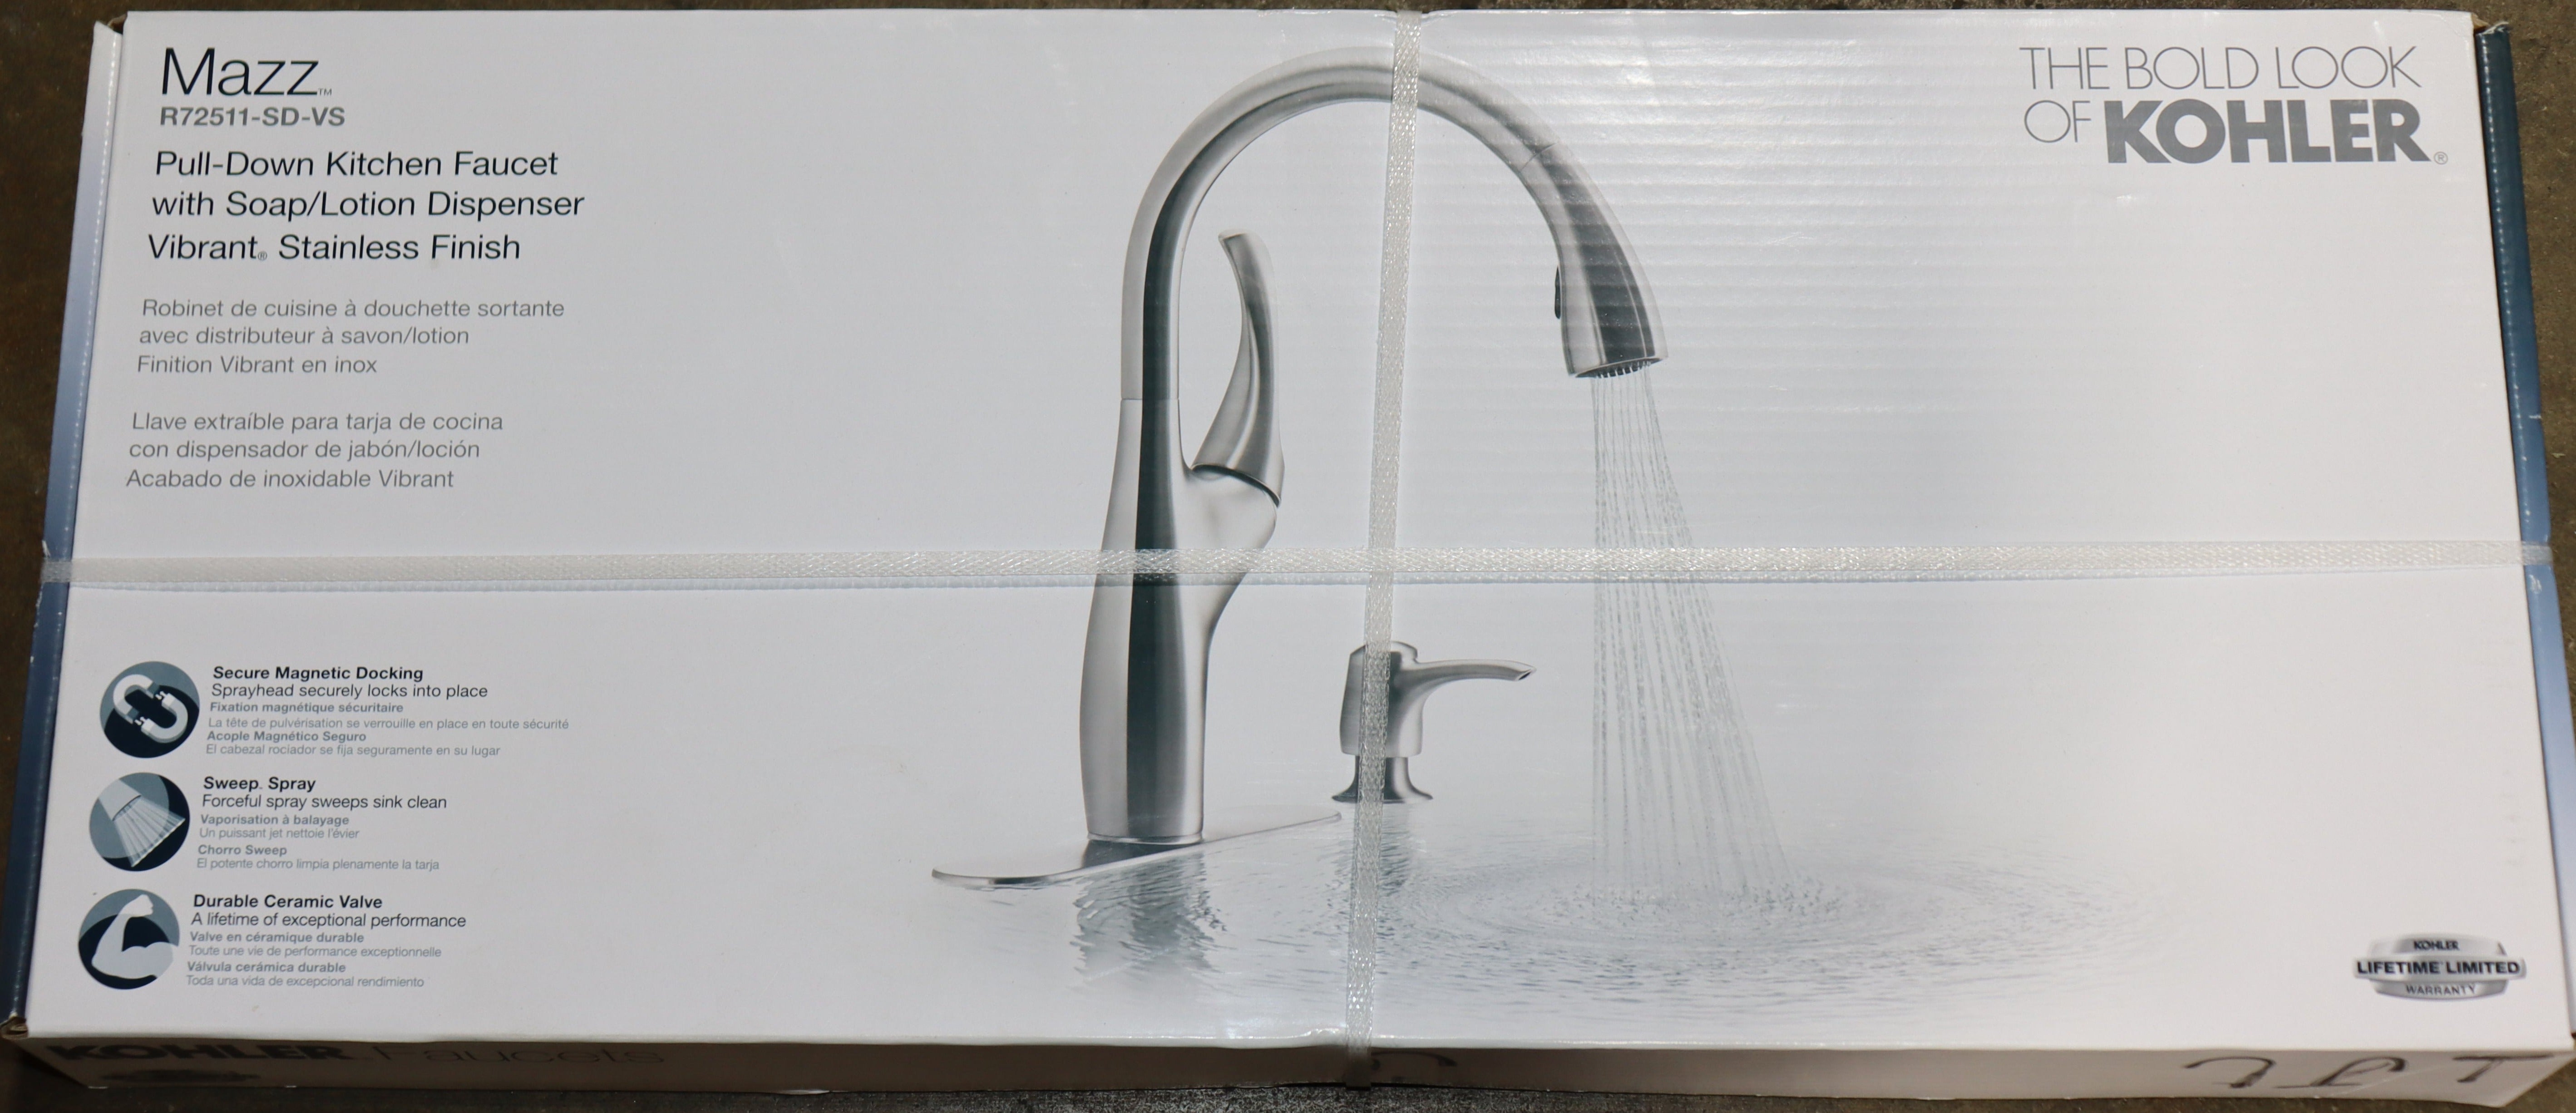 Kohler Mazz Pull Down Kitchen Faucet with Soap Dispenser Vibrant Stainless Steel Finish